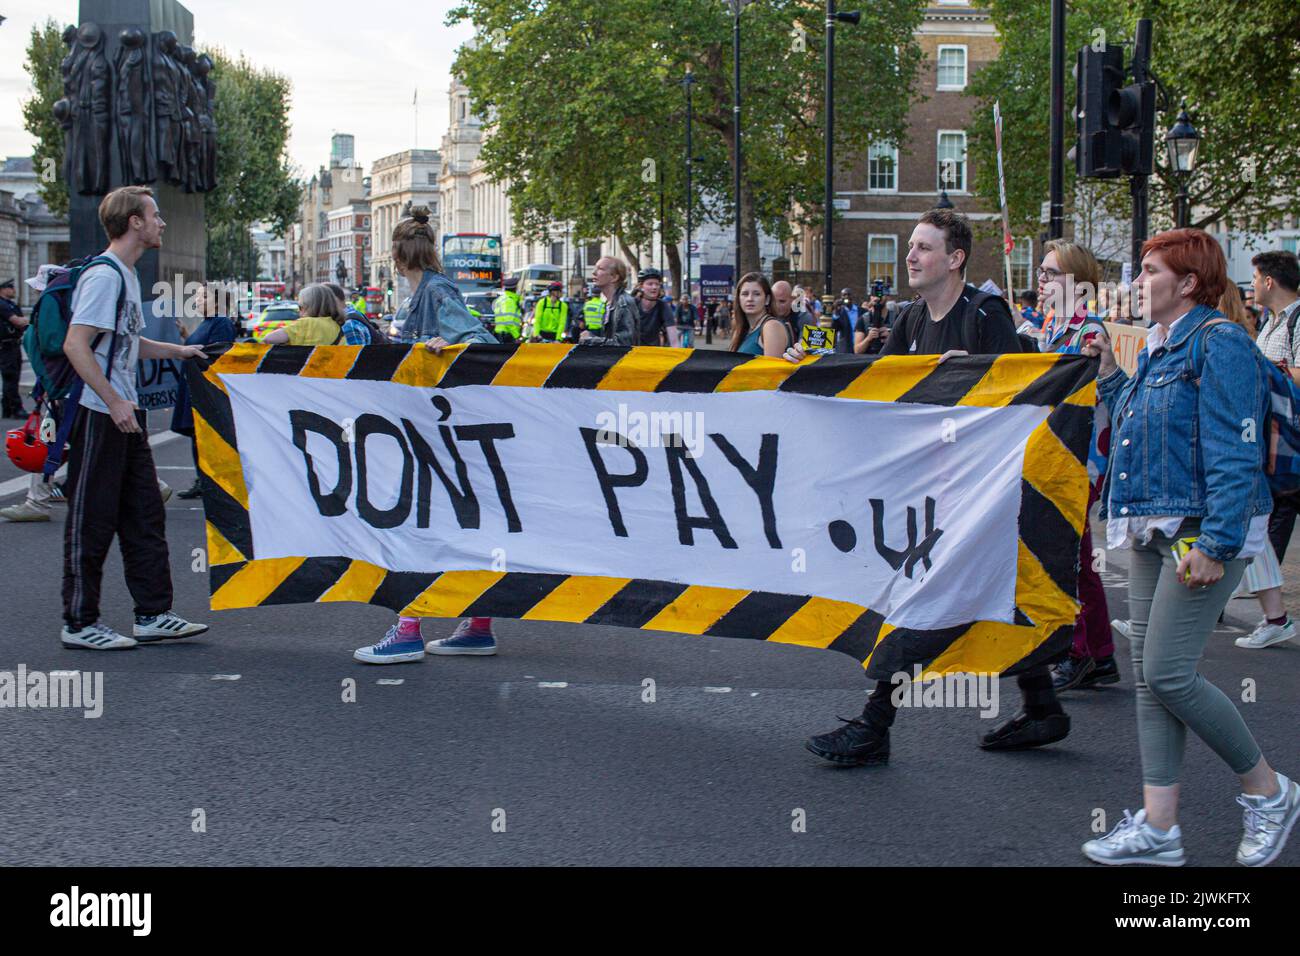 Londra, Inghilterra, Regno Unito. 5th Set, 2022. I manifestanti si riuniscono fuori Downing Street, parte della campagna Do't Pay contro massicci aumenti dei prezzi dell'energia. Foto Stock